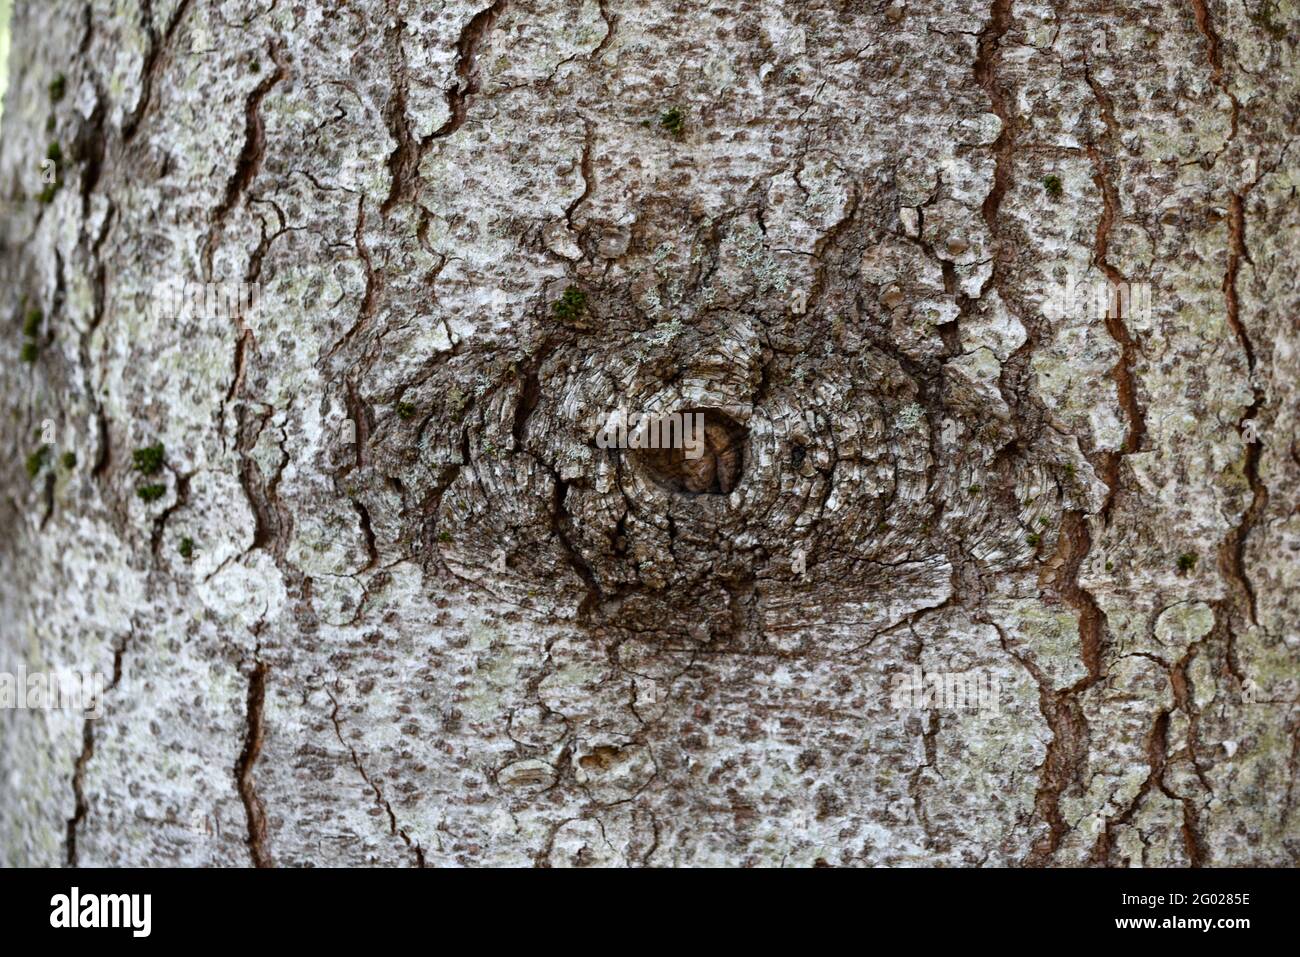 Natürliche augenähnliche Formation auf dem Baumstamm der Bergkiefer Pinus mugo durch Wunde des gebrochenen oder gefallenen Ast hinterlassen Stockfoto